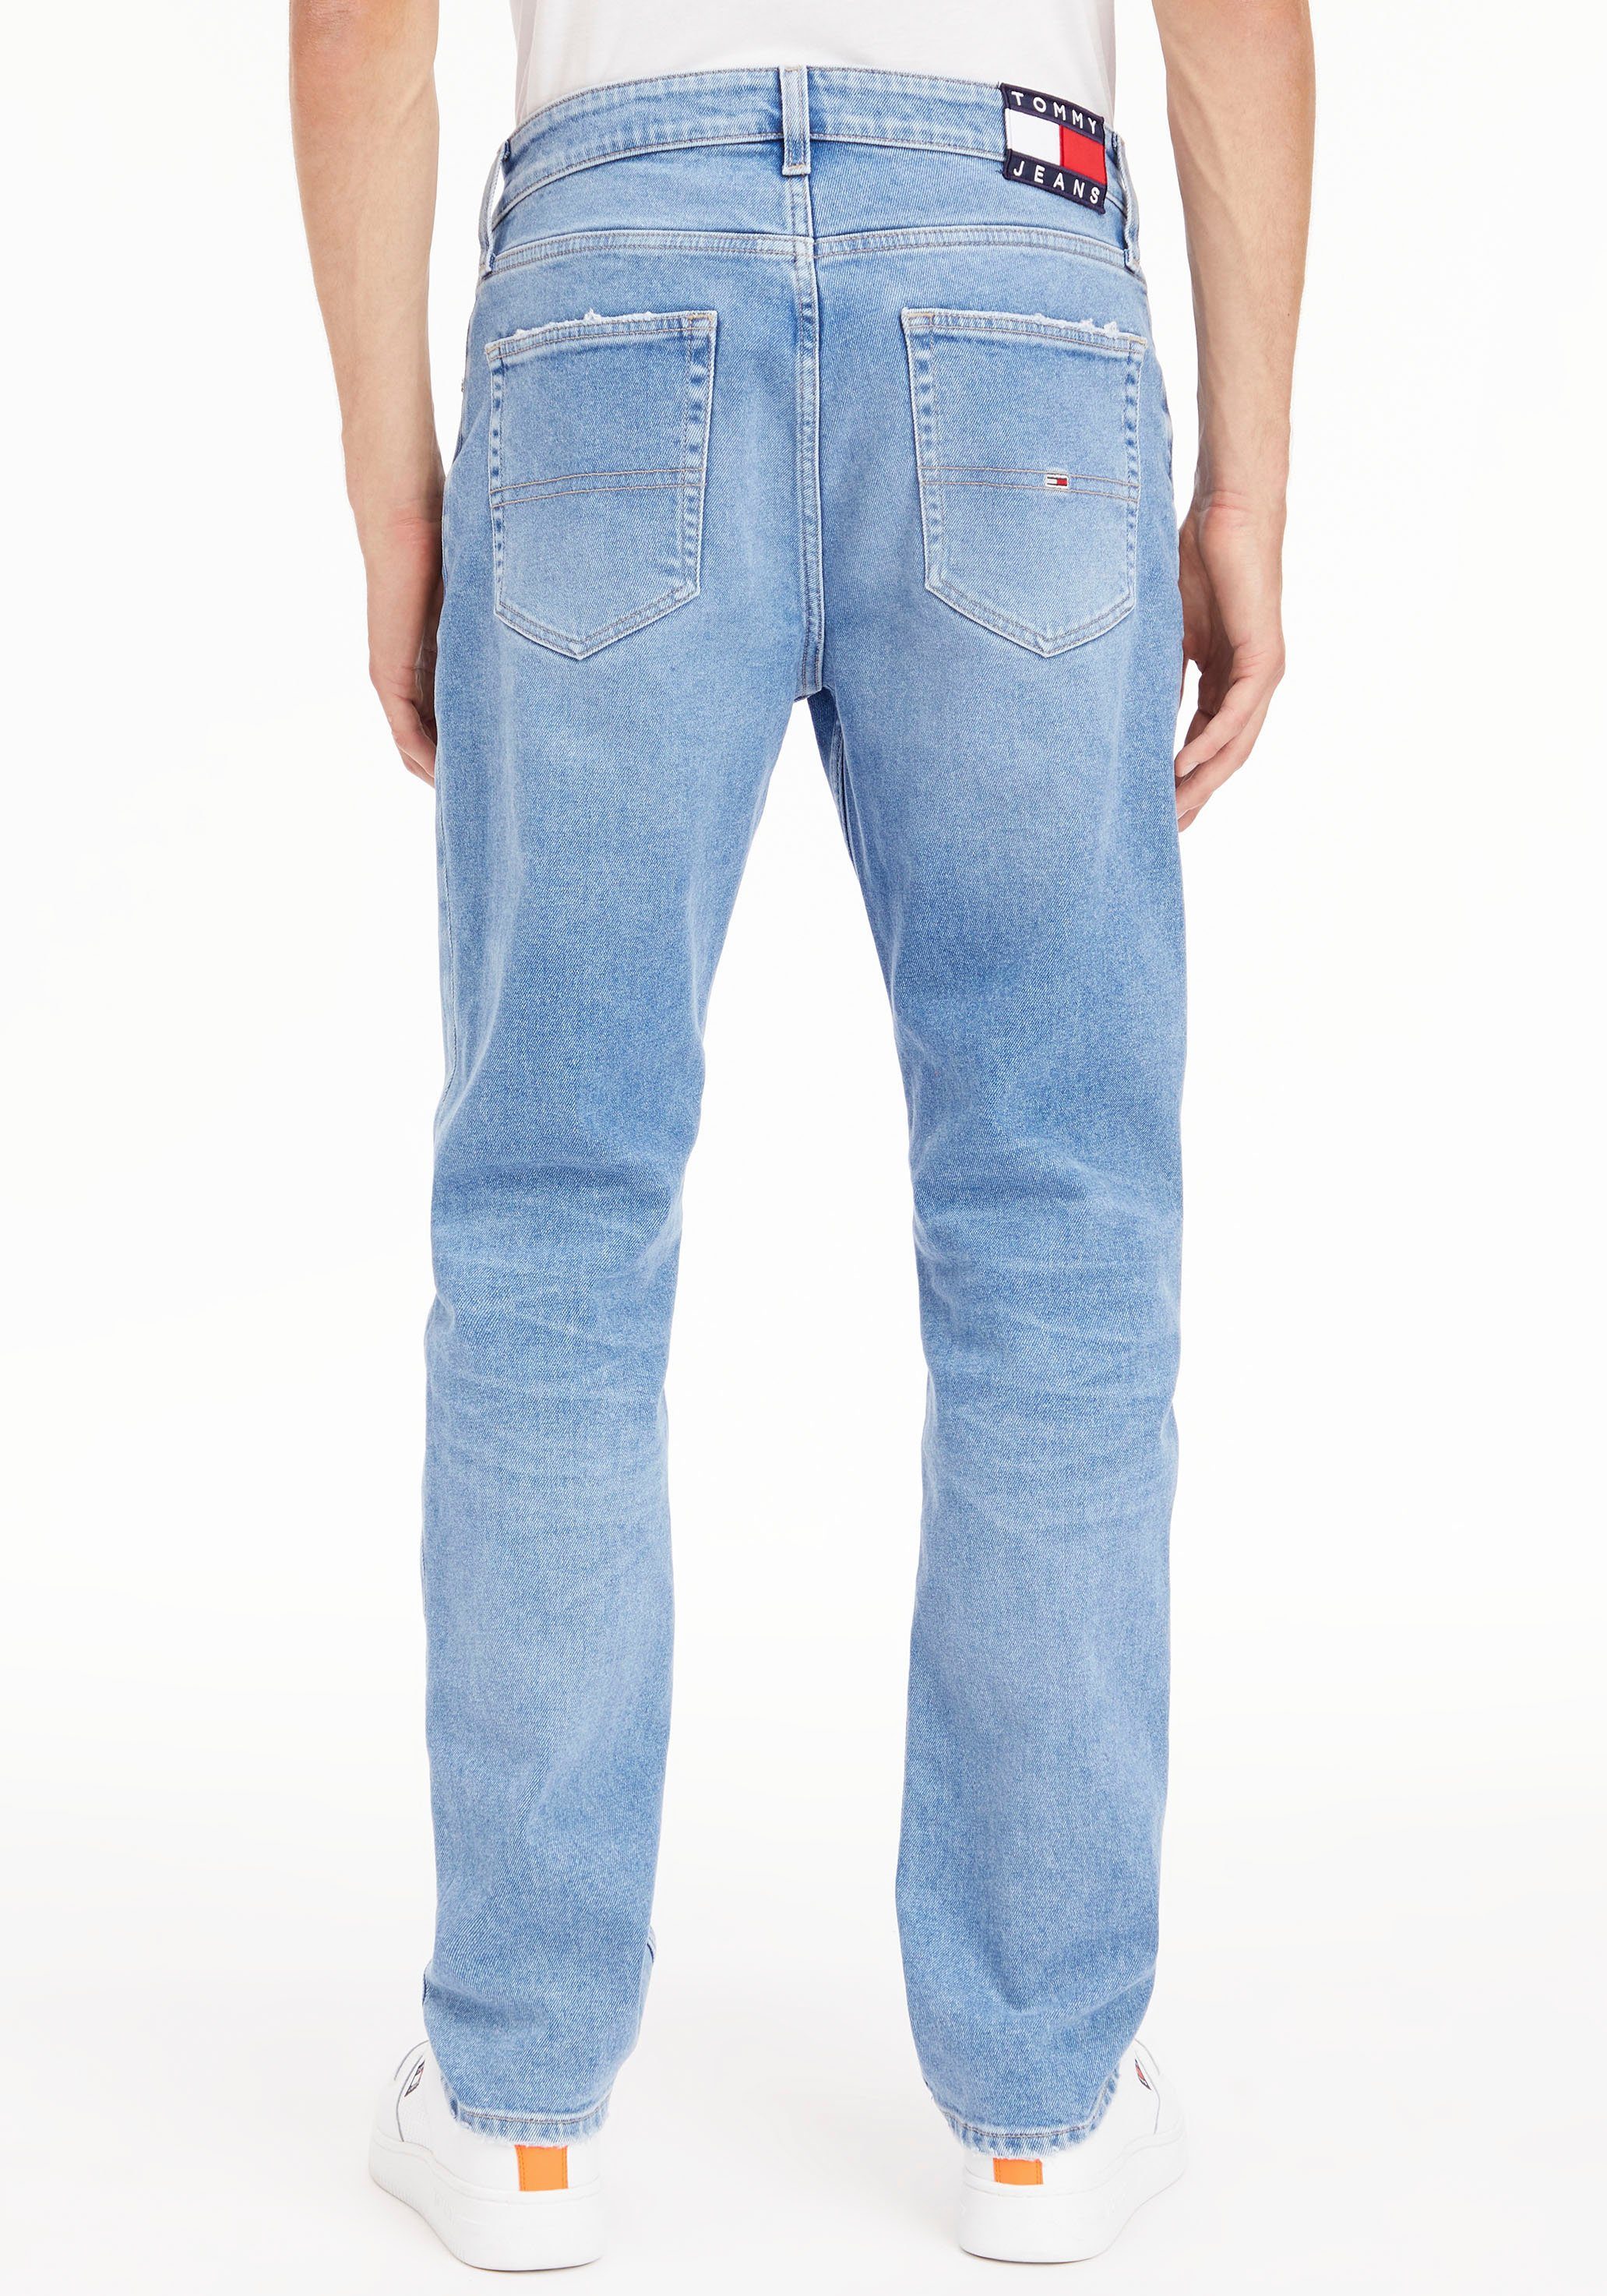 Jeans und PANT BG0036 Destroyed- SHORT HOT Abriebeffekten Tommy Jeansshorts mit